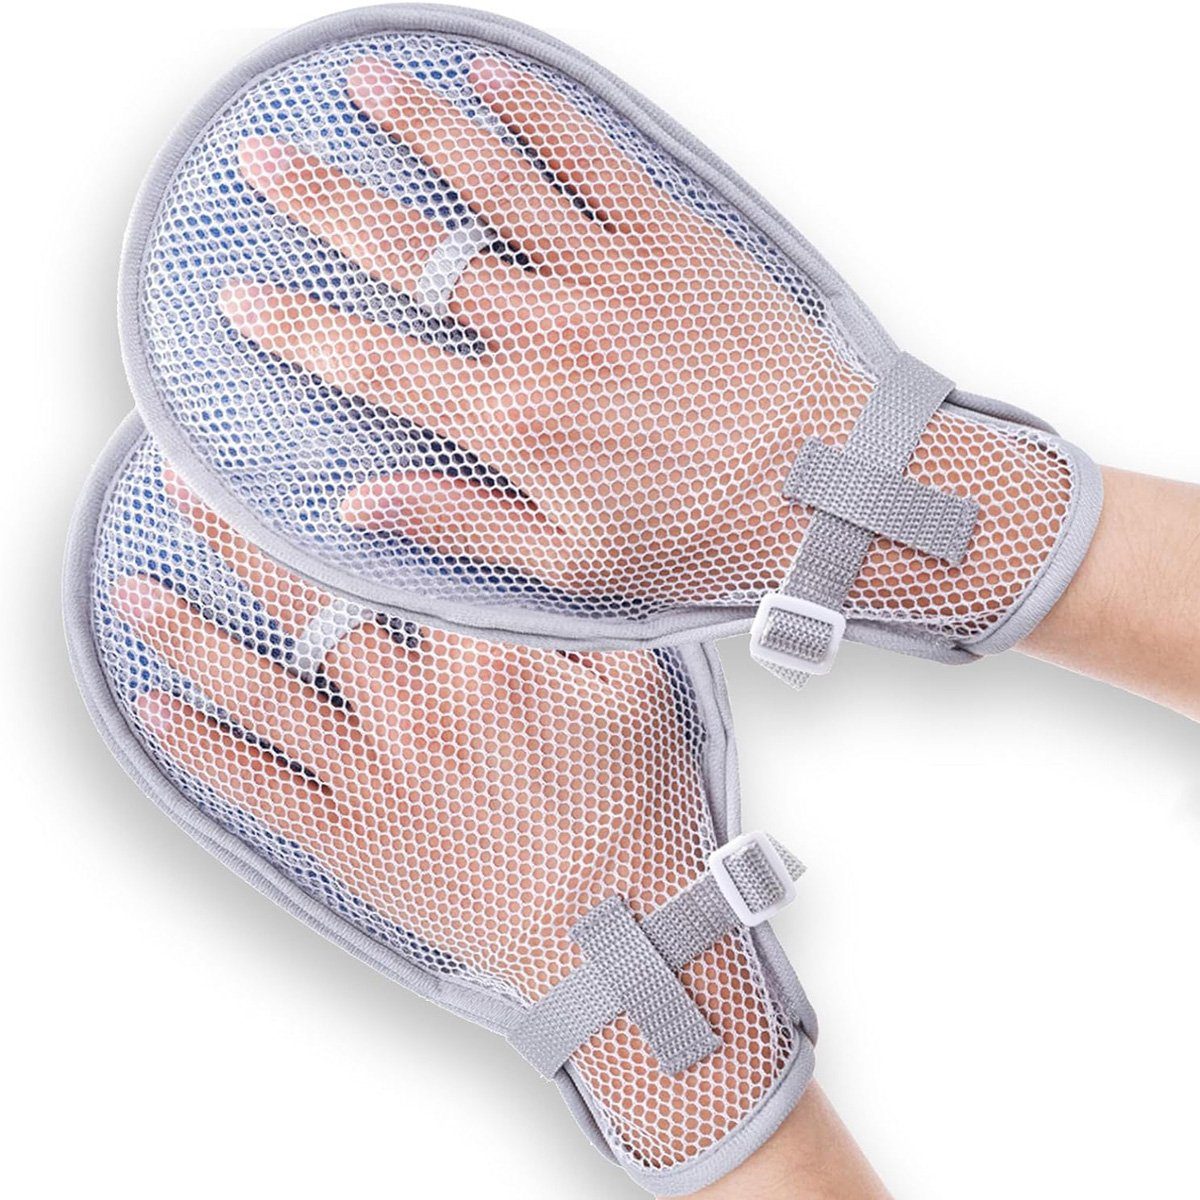 yozhiqu Fäustlinge Band für eingeschränkte Handbewegung, medizinische Handschuhe -2er-Set Handschutzhandschuhe für Menschen mit Demenz oder autistische Kinder